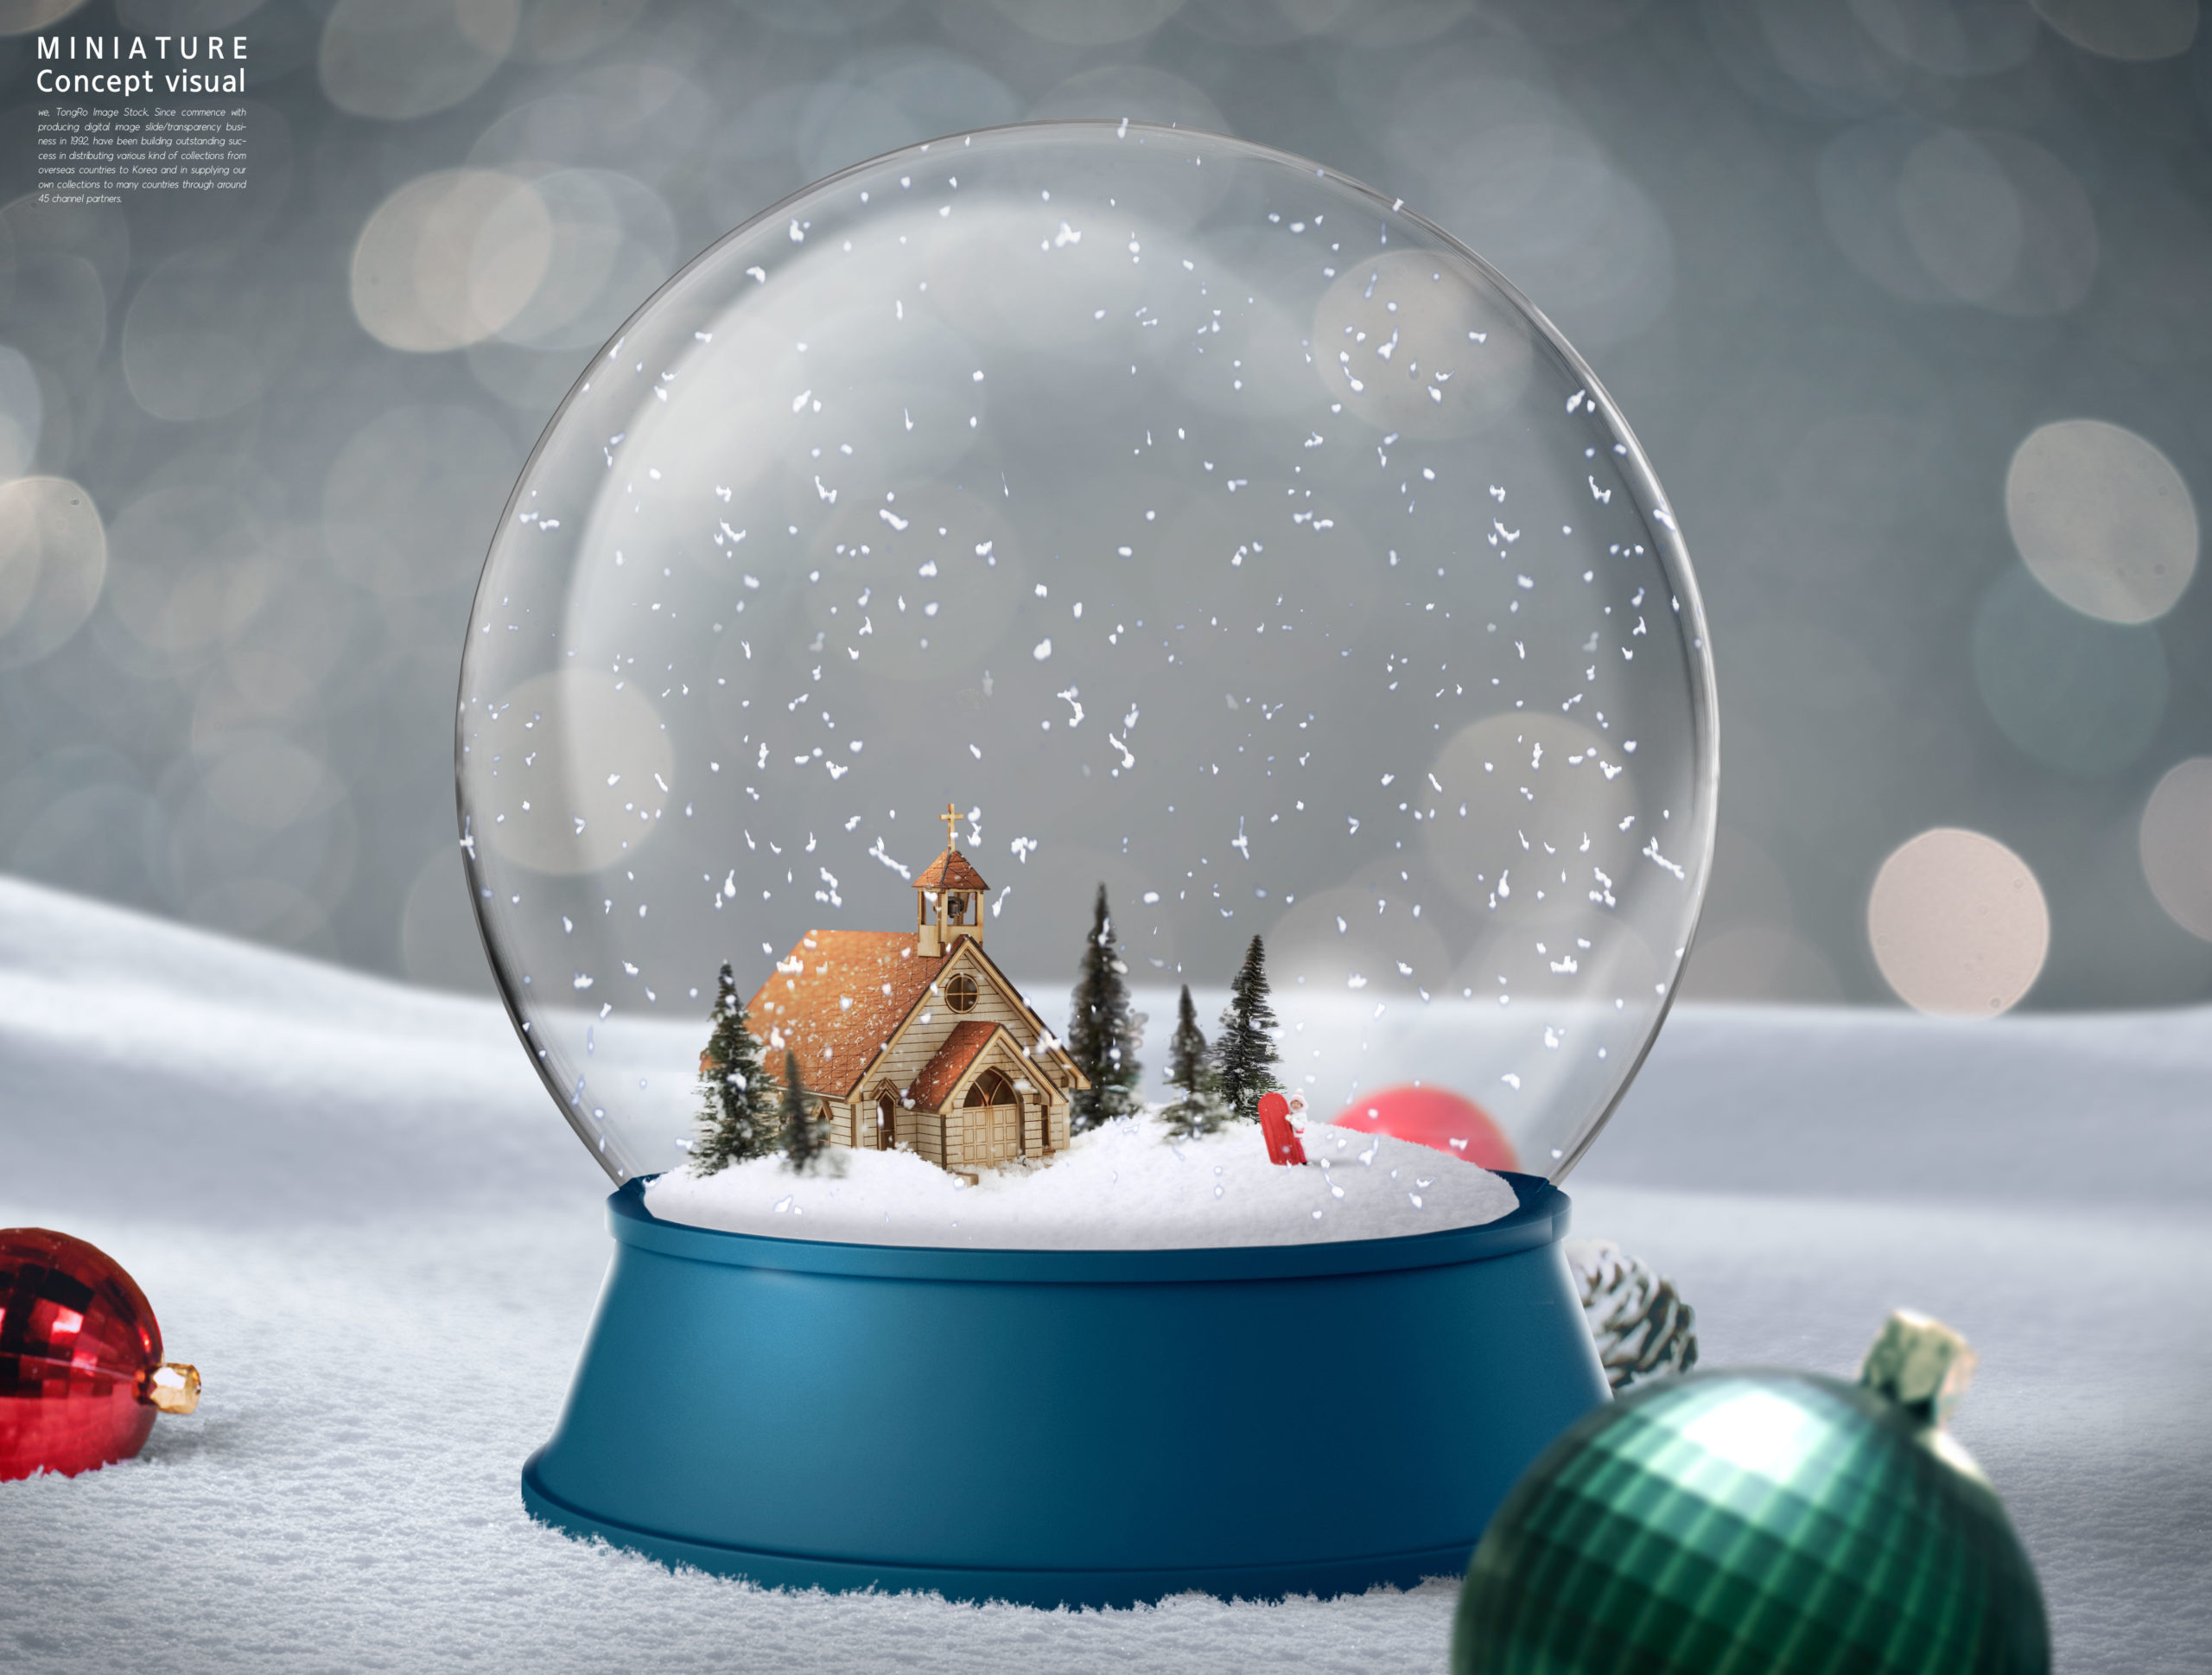 冬季圣诞主题微型视觉场景psd素材合集插图